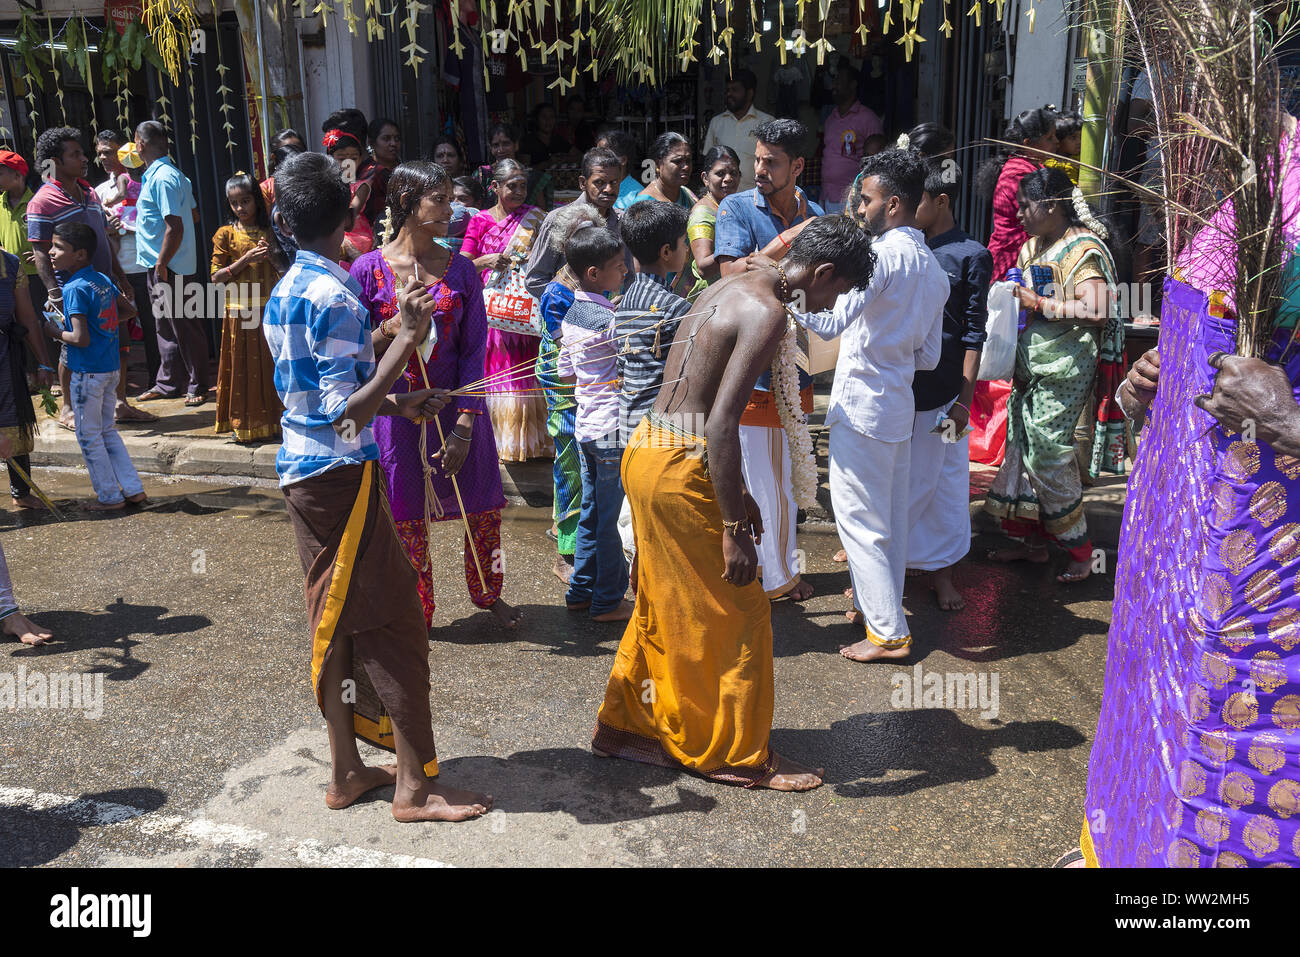 Pusellawa, Sri Lanka, 12. März 2019: Hindu Festival der Thaipusam - Body Piercing Rituale unter dem Blut Mond. Mann mit Piercing. Stockfoto